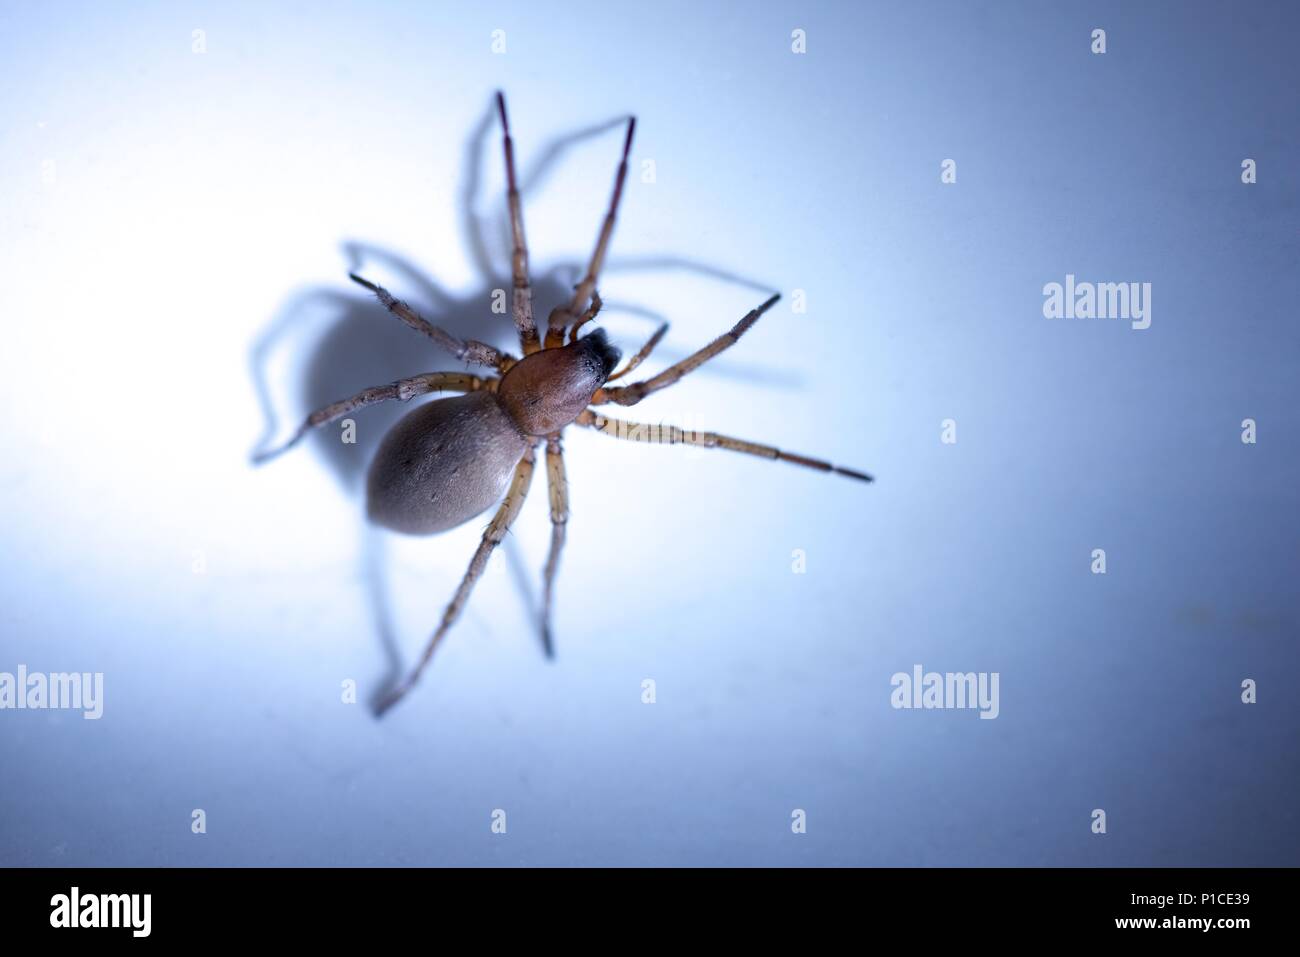 Sac spider (Clubionidae): Eine einzige Spinne in die weiße Keramik Waschbecken beschränkt Stockfoto